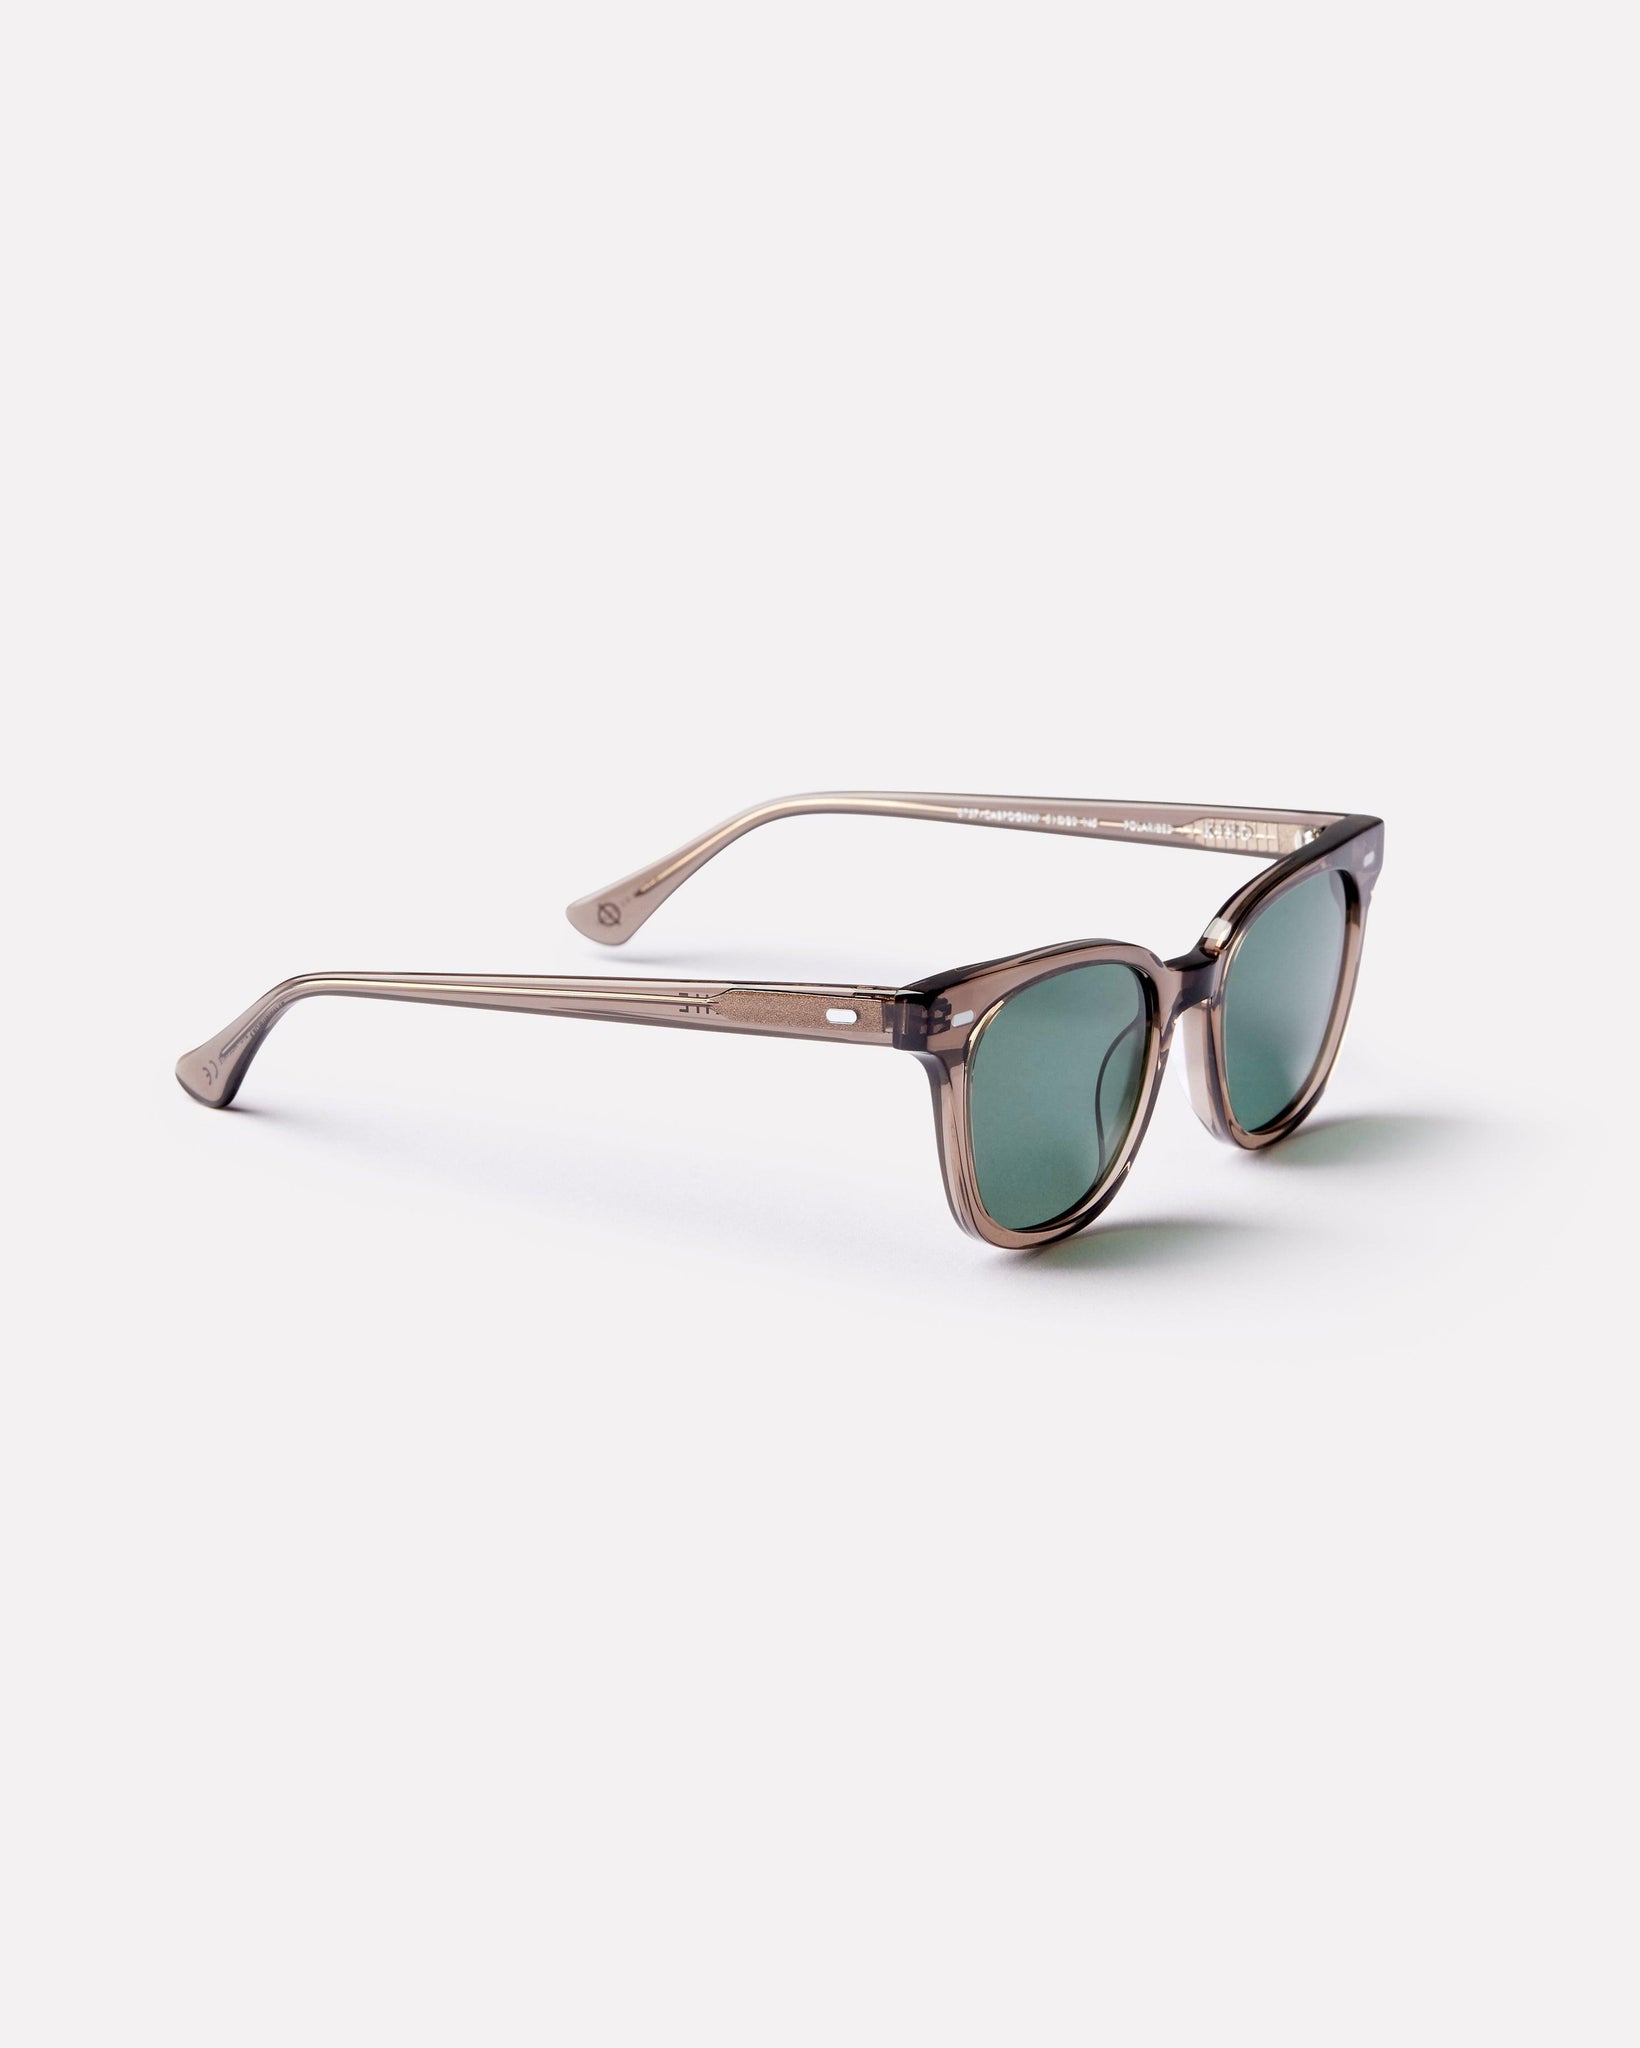 Kino - Carbon Polished / Green Polarized - Sunglasses - EPOKHE EYEWEAR